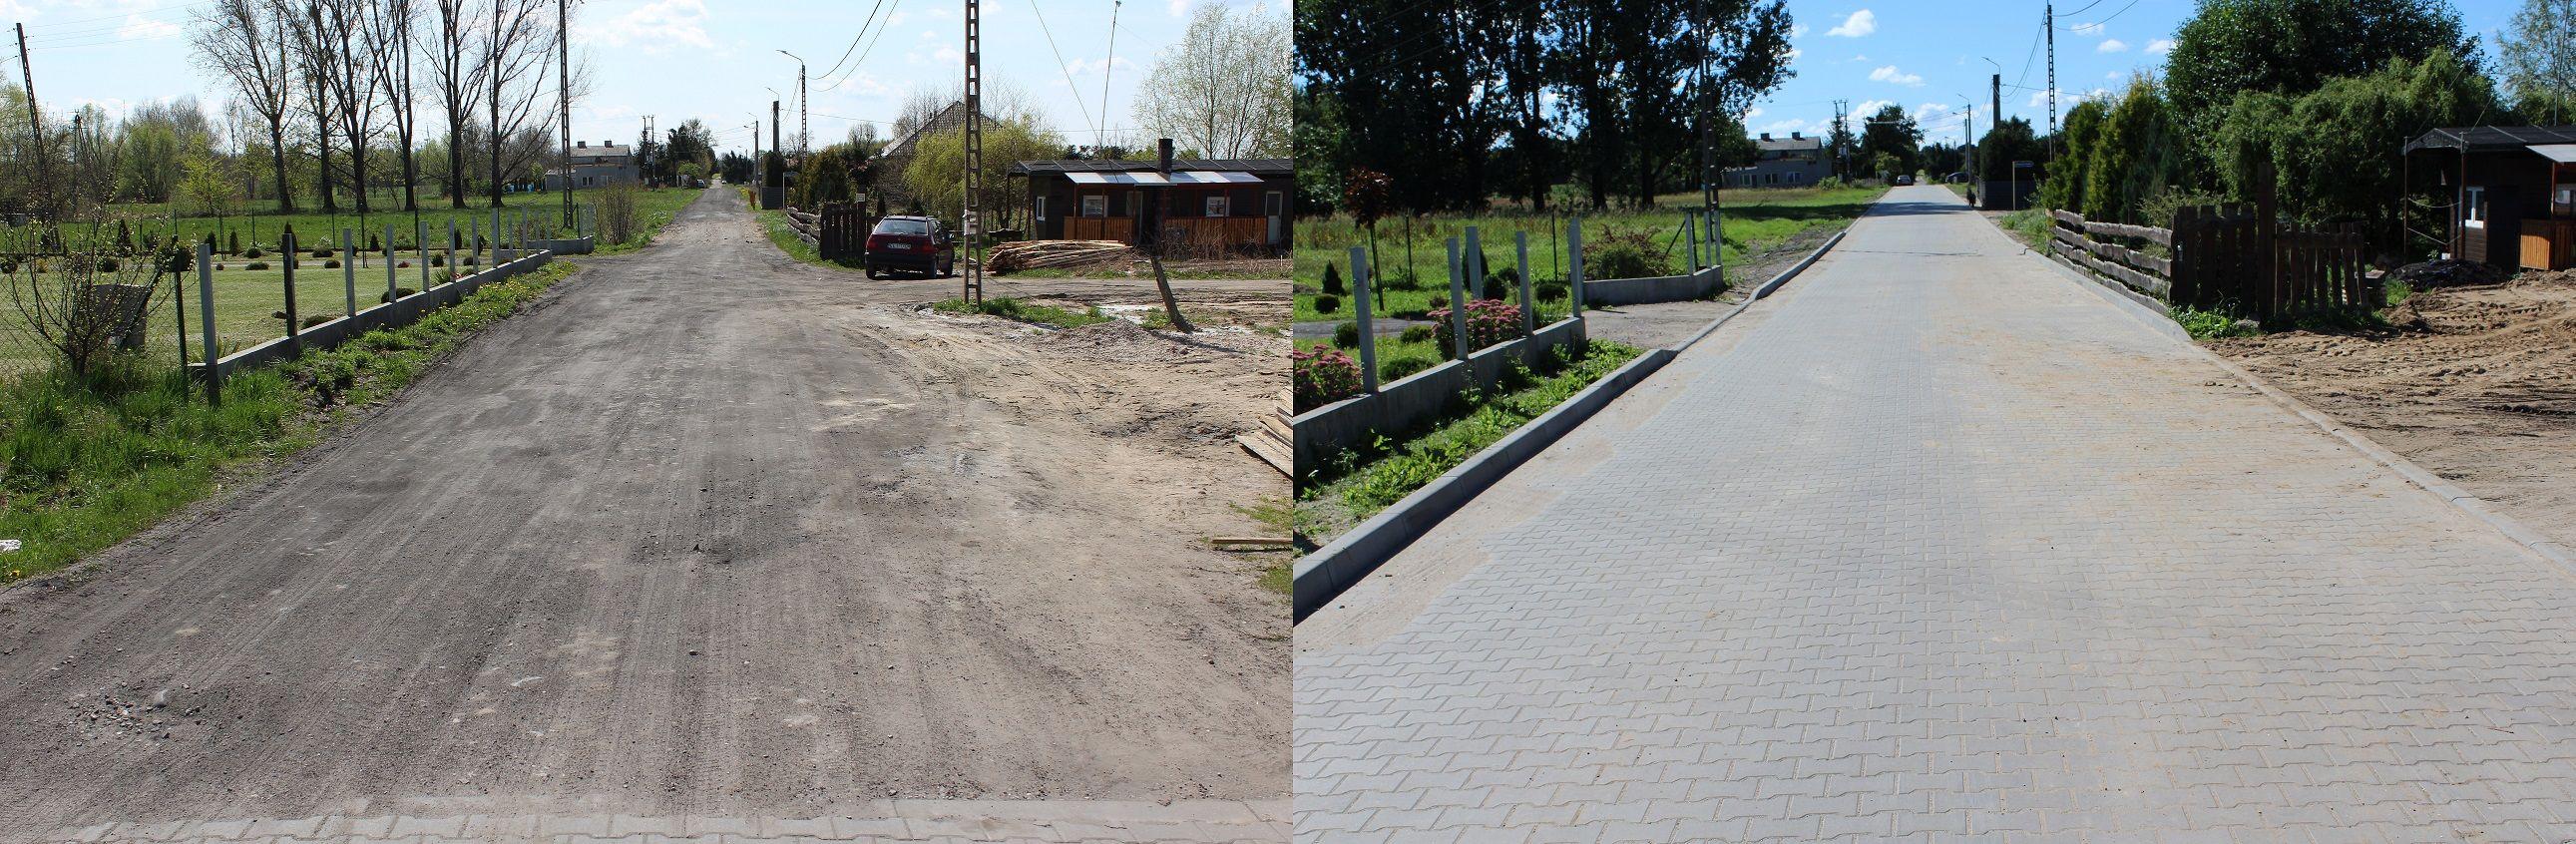 ul. Żeromskiego w Lipnie - stan przed i po remoncie